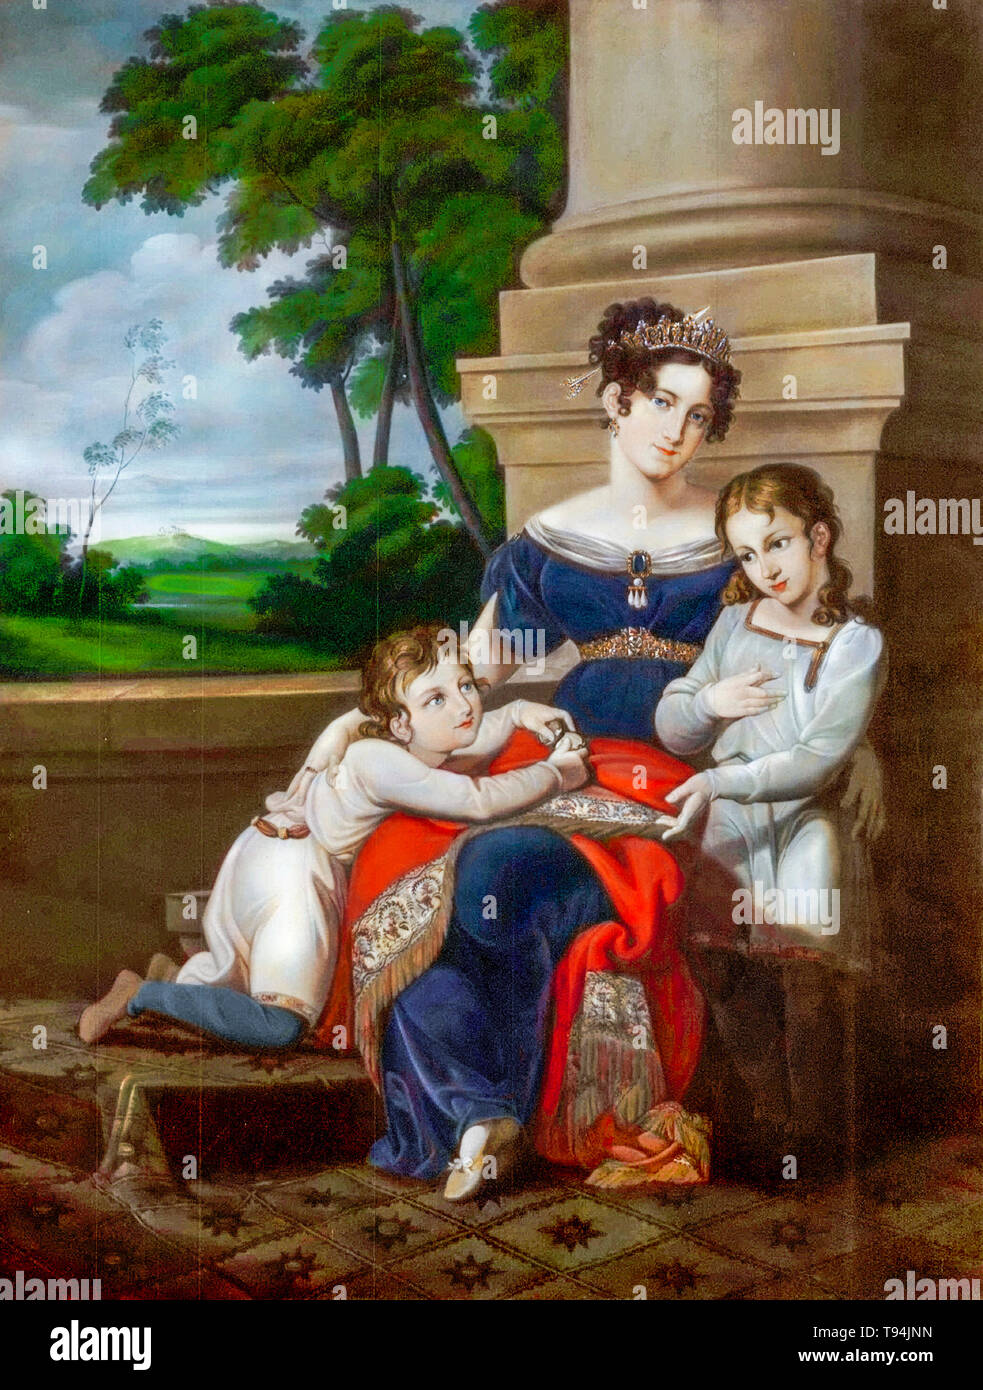 Louise de Sax-Gotha-Altenburg, duquesa de Sajonia-coburgo y Gotha, con sus hijos, Alberto, futuro esposo de la Reina Victoria, y Ernest, futuro duque de Sajonia-coburgo y Gotha, retrato de familia por Ludwig Döll, c. 1823 Foto de stock